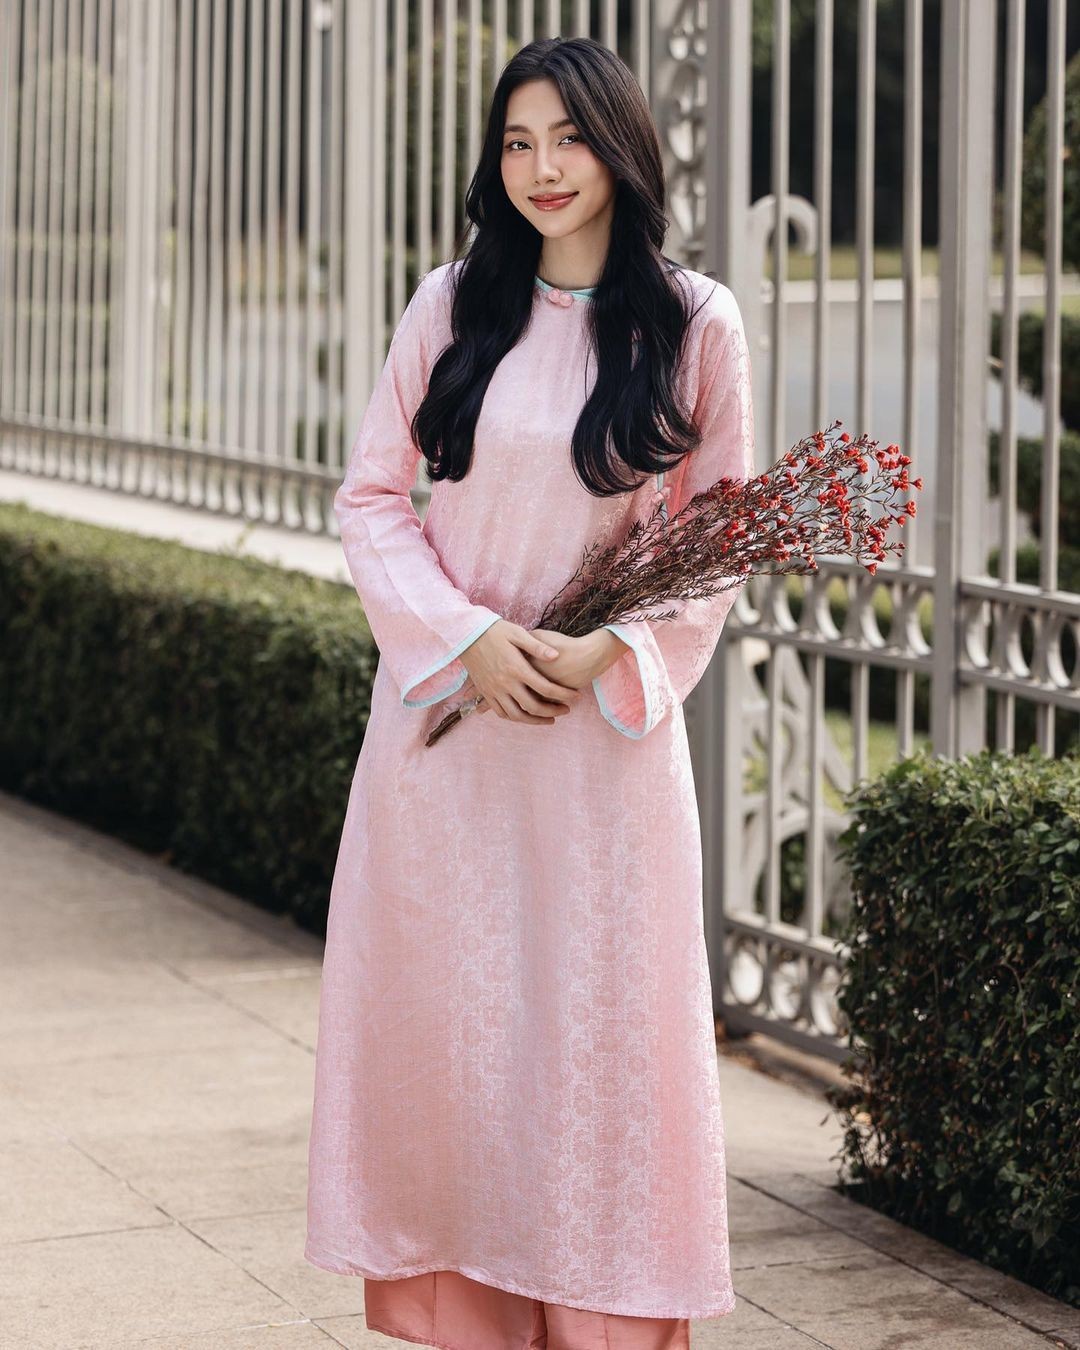 Hoa hậu Thùy Tiên trang điểm tông hồng đất ăn ý với tà áo.